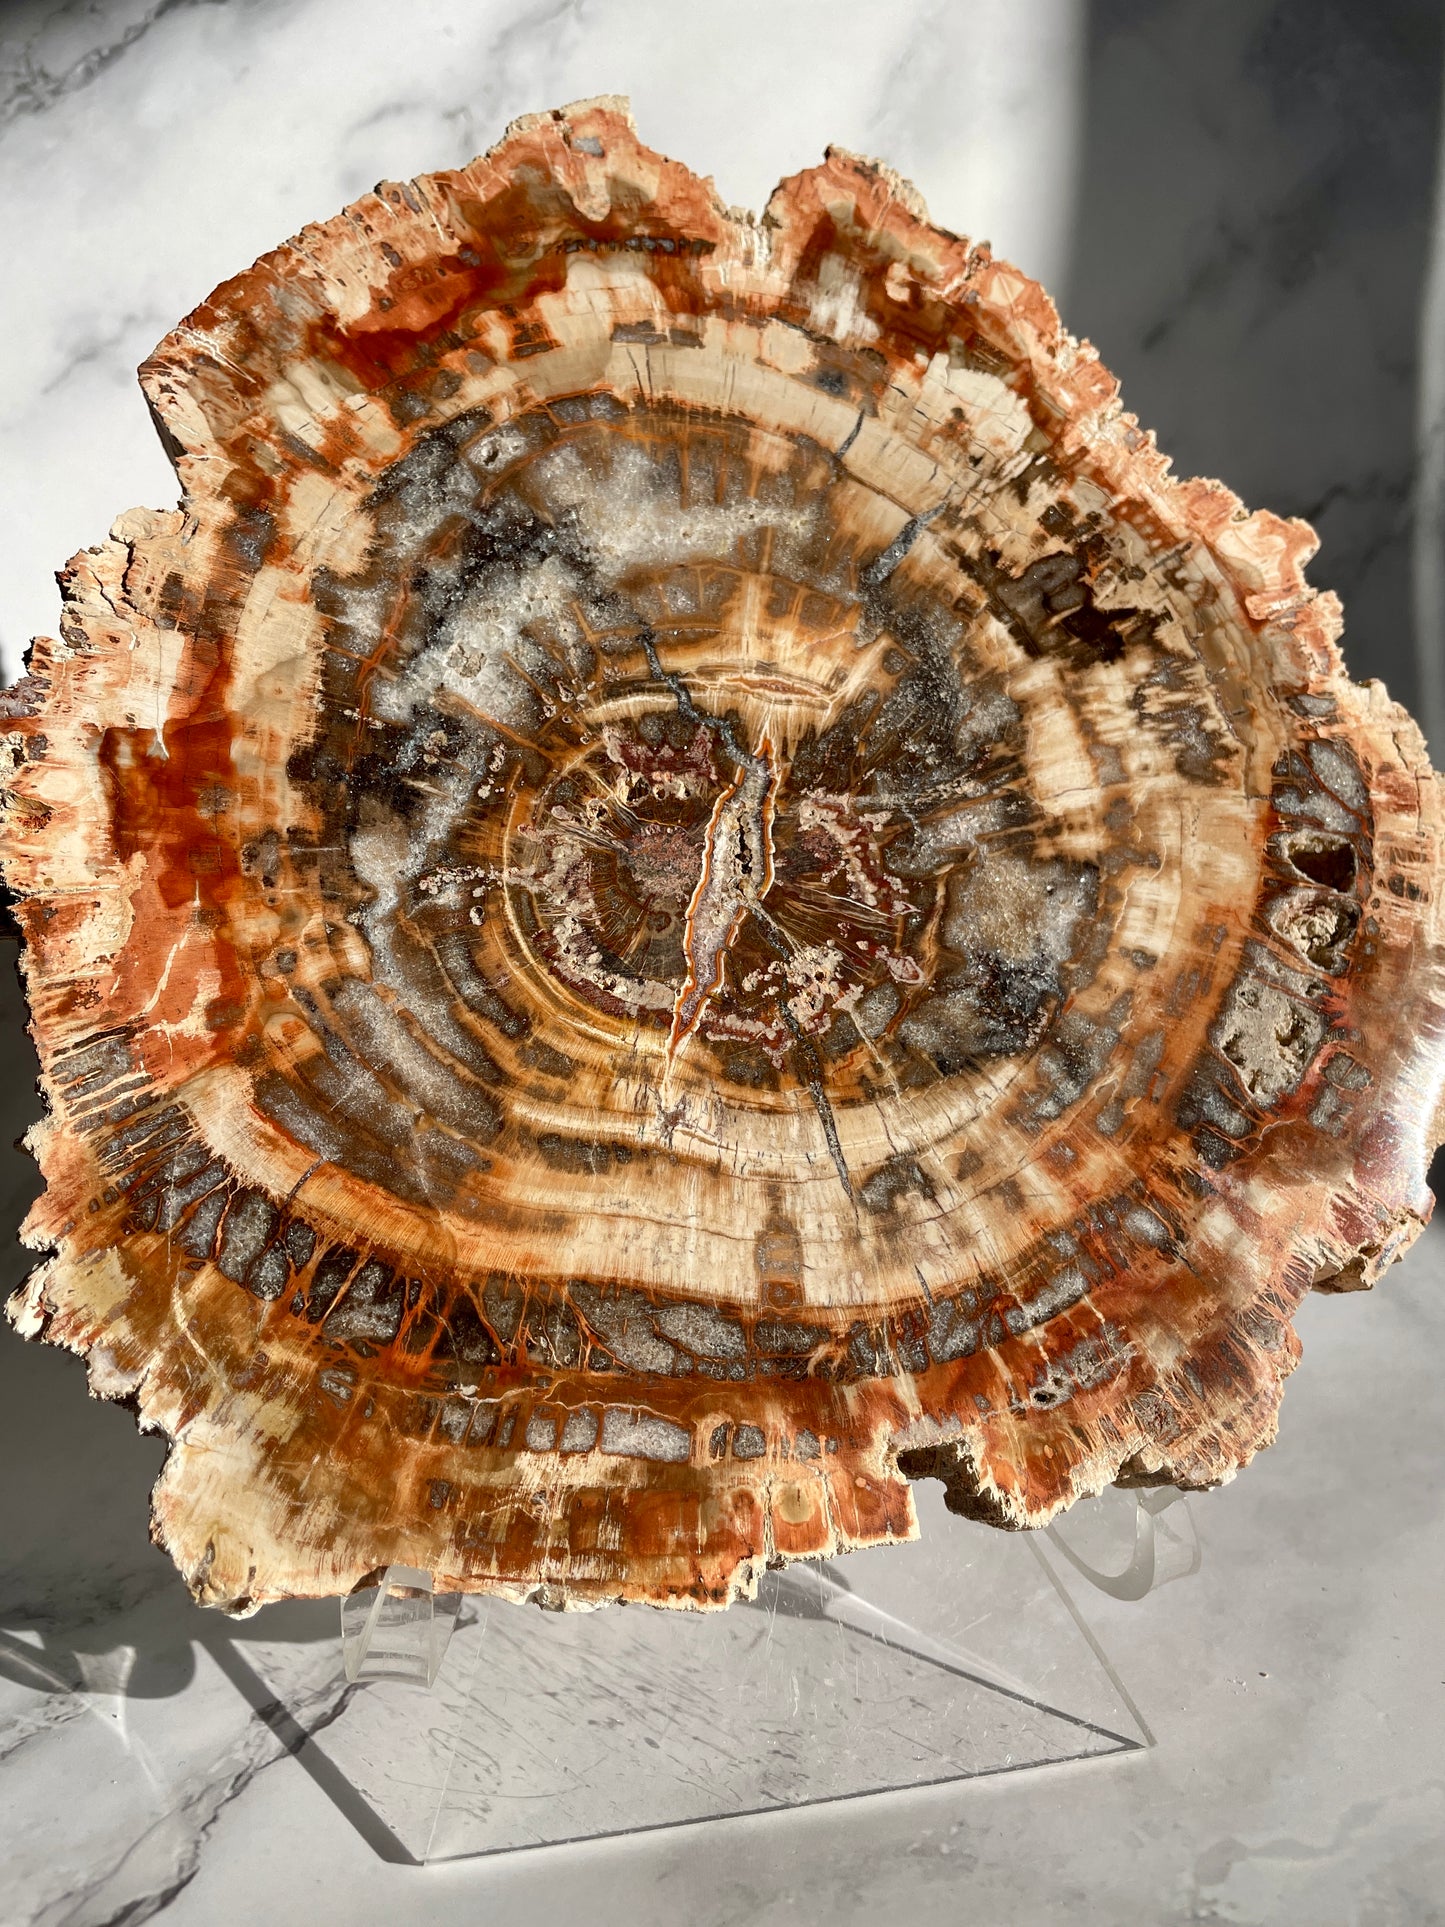 Large Madagascar Petrified Wood Polished Slab With Plastic Stand